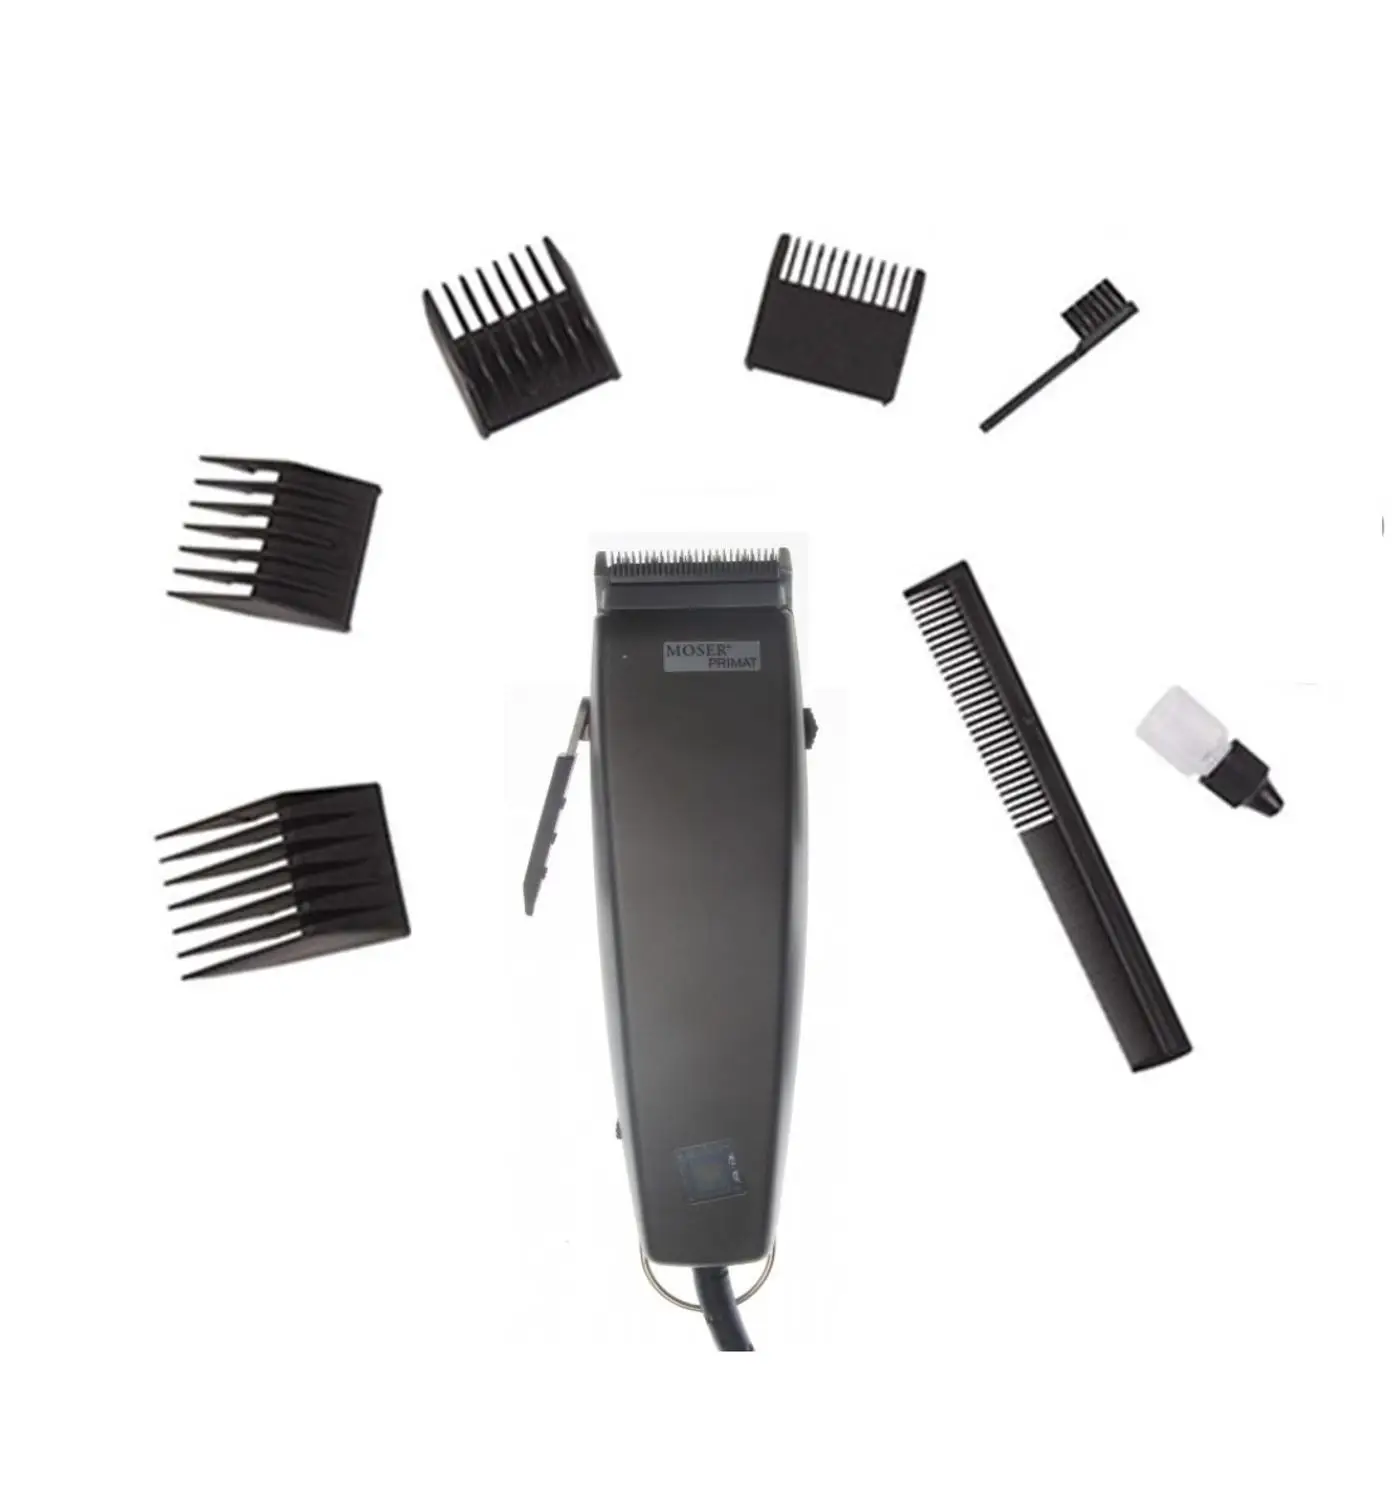 

Moser 1230 Primat профессиональная машинка для стрижки волос, бритва для волос, электрическая бритва